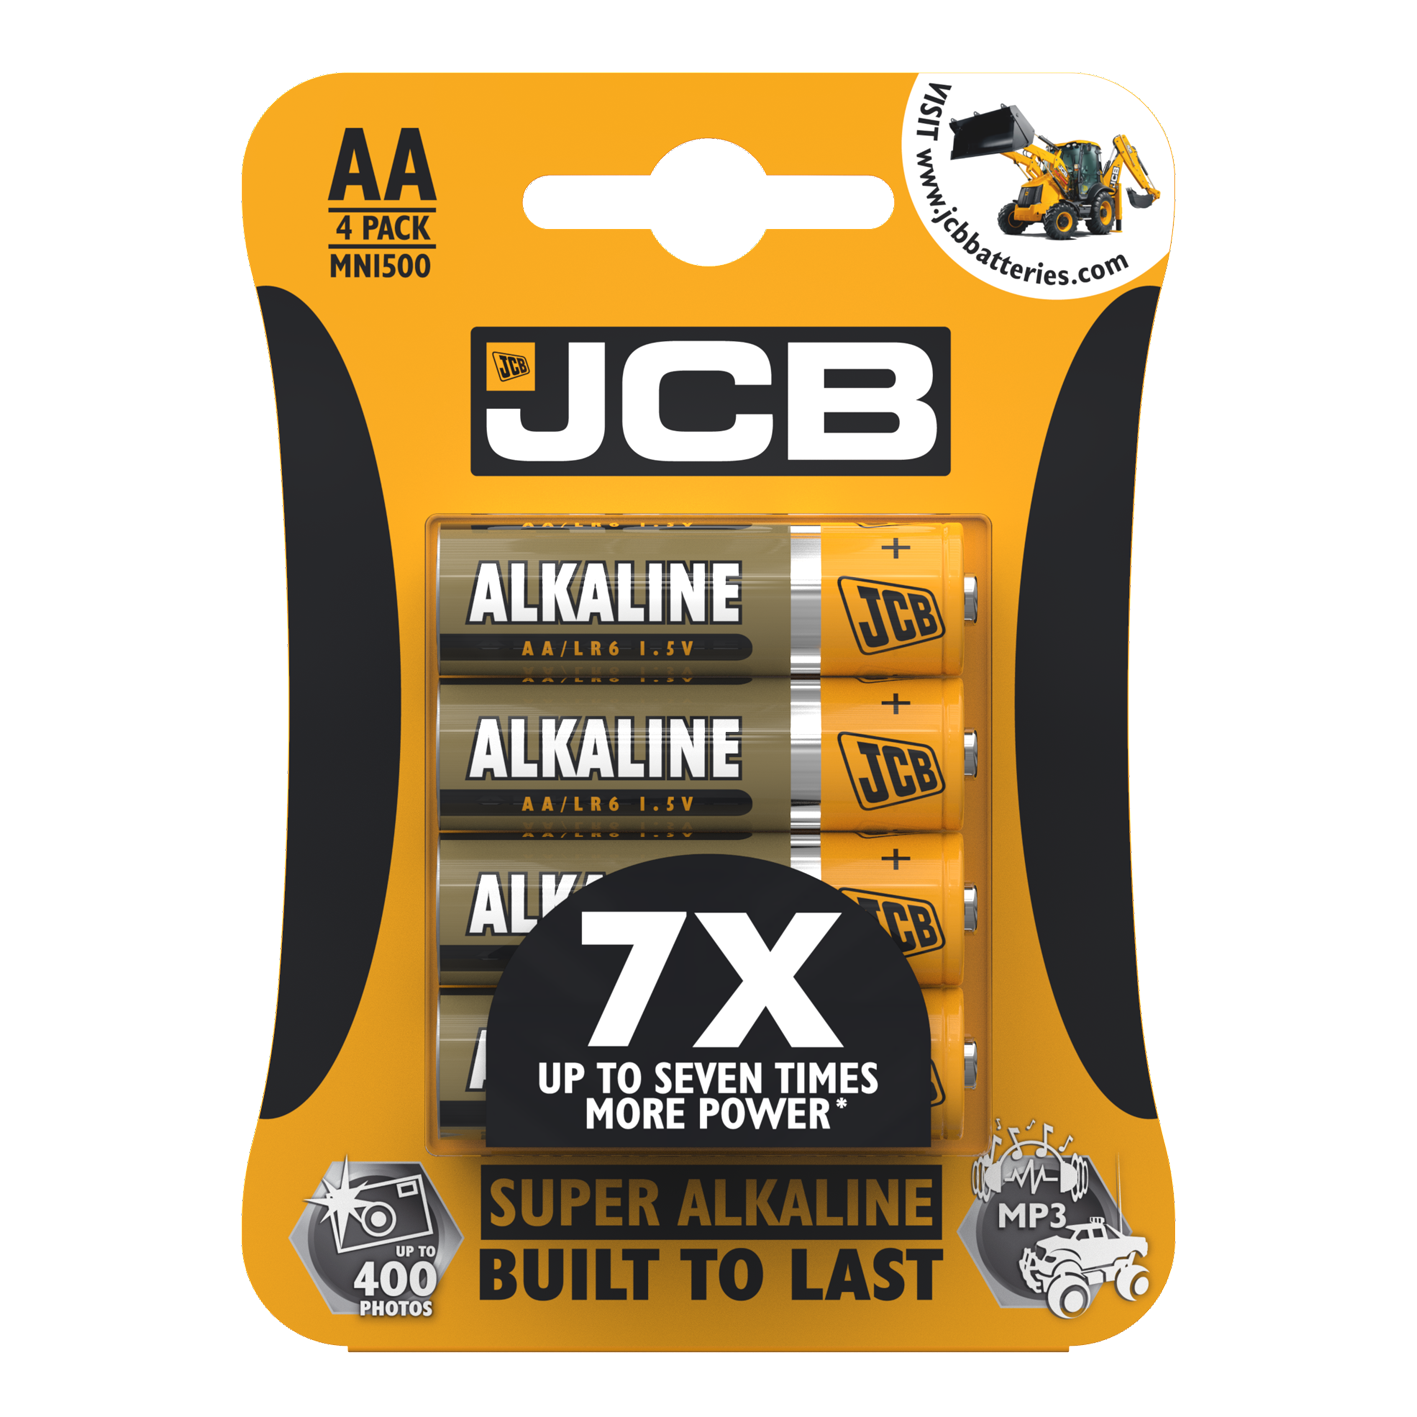 JCB AA súper alcalino, paquete de 4